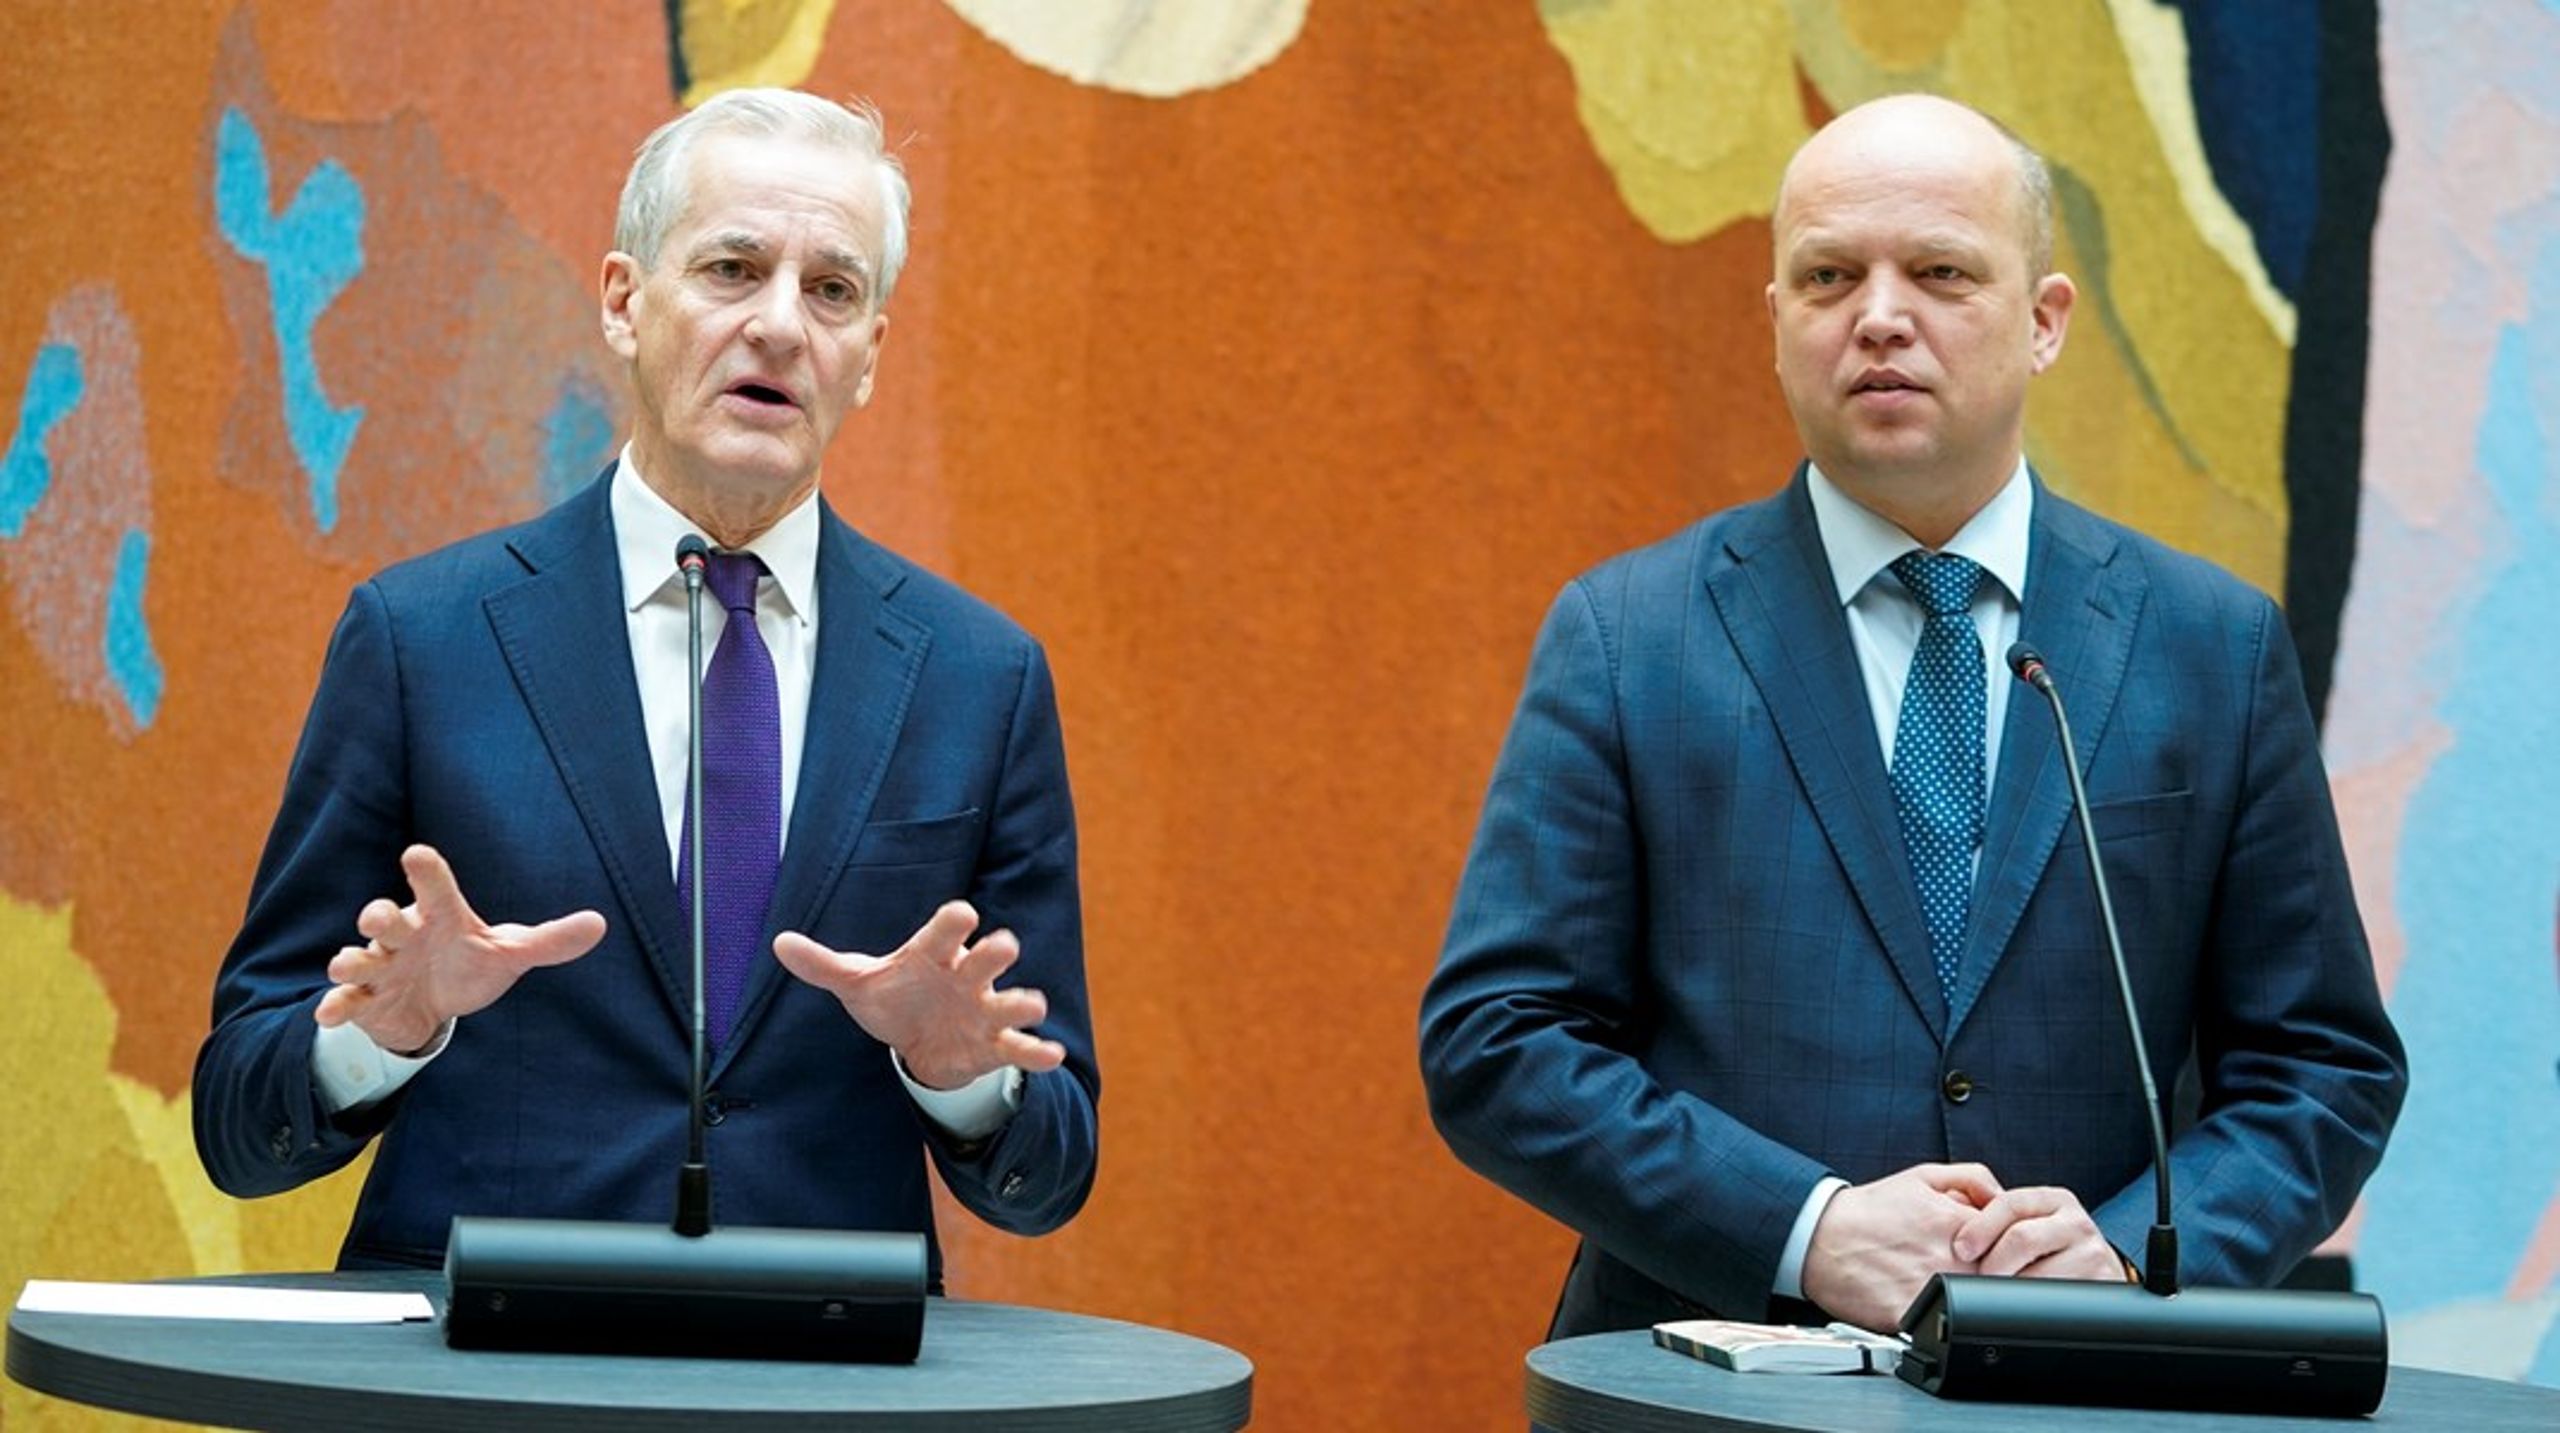 Statsminister Støre og finansminister Vedum inviterte til pressemøte etter det siste møtet om lantidsplanen med partiene på Stortinget.